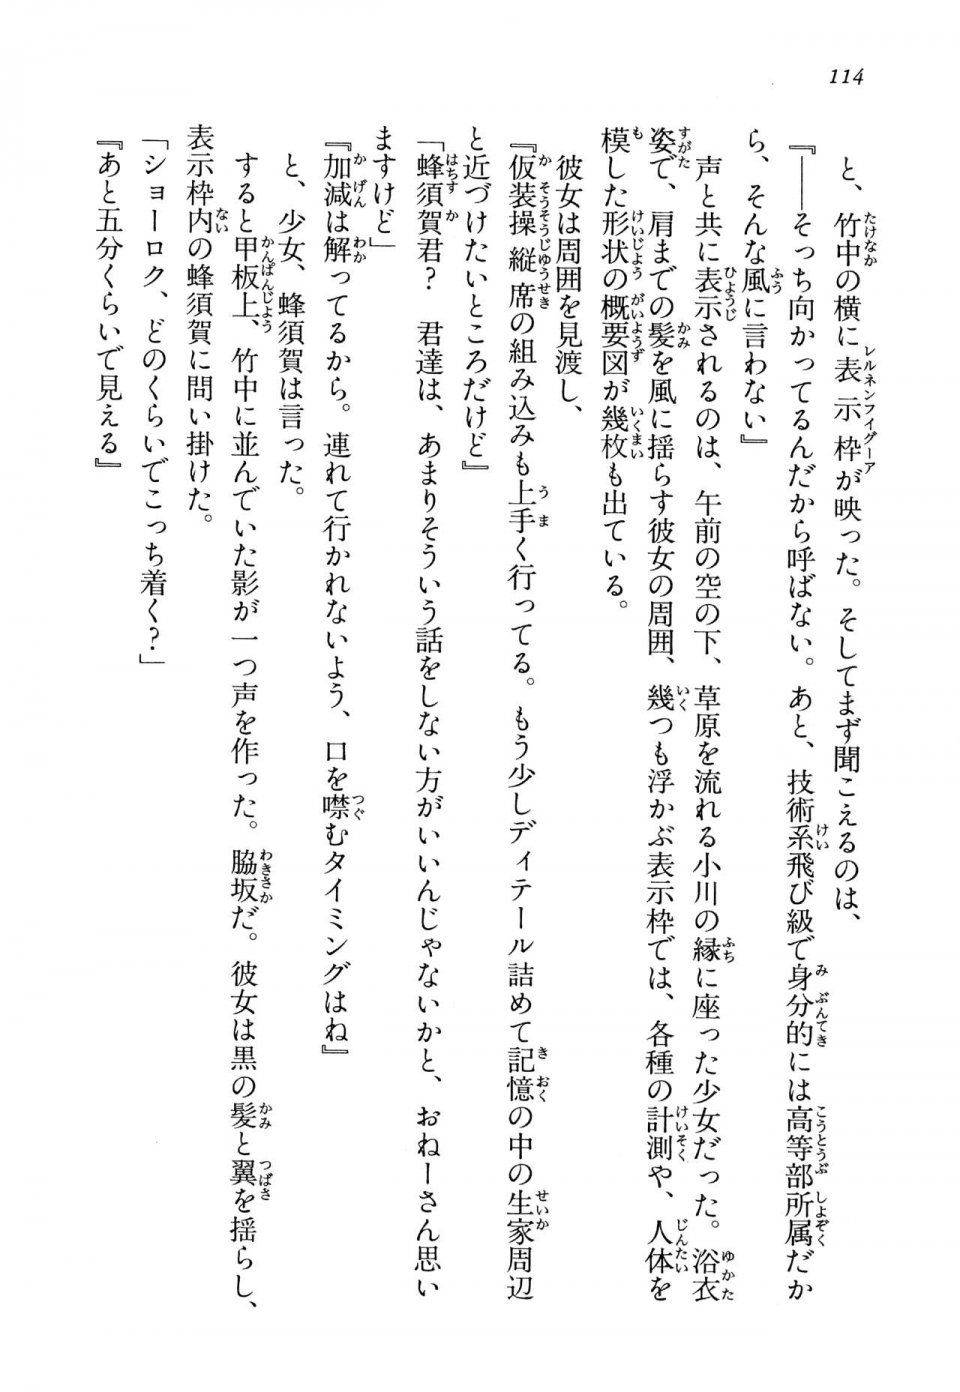 Kyoukai Senjou no Horizon LN Vol 13(6A) - Photo #114